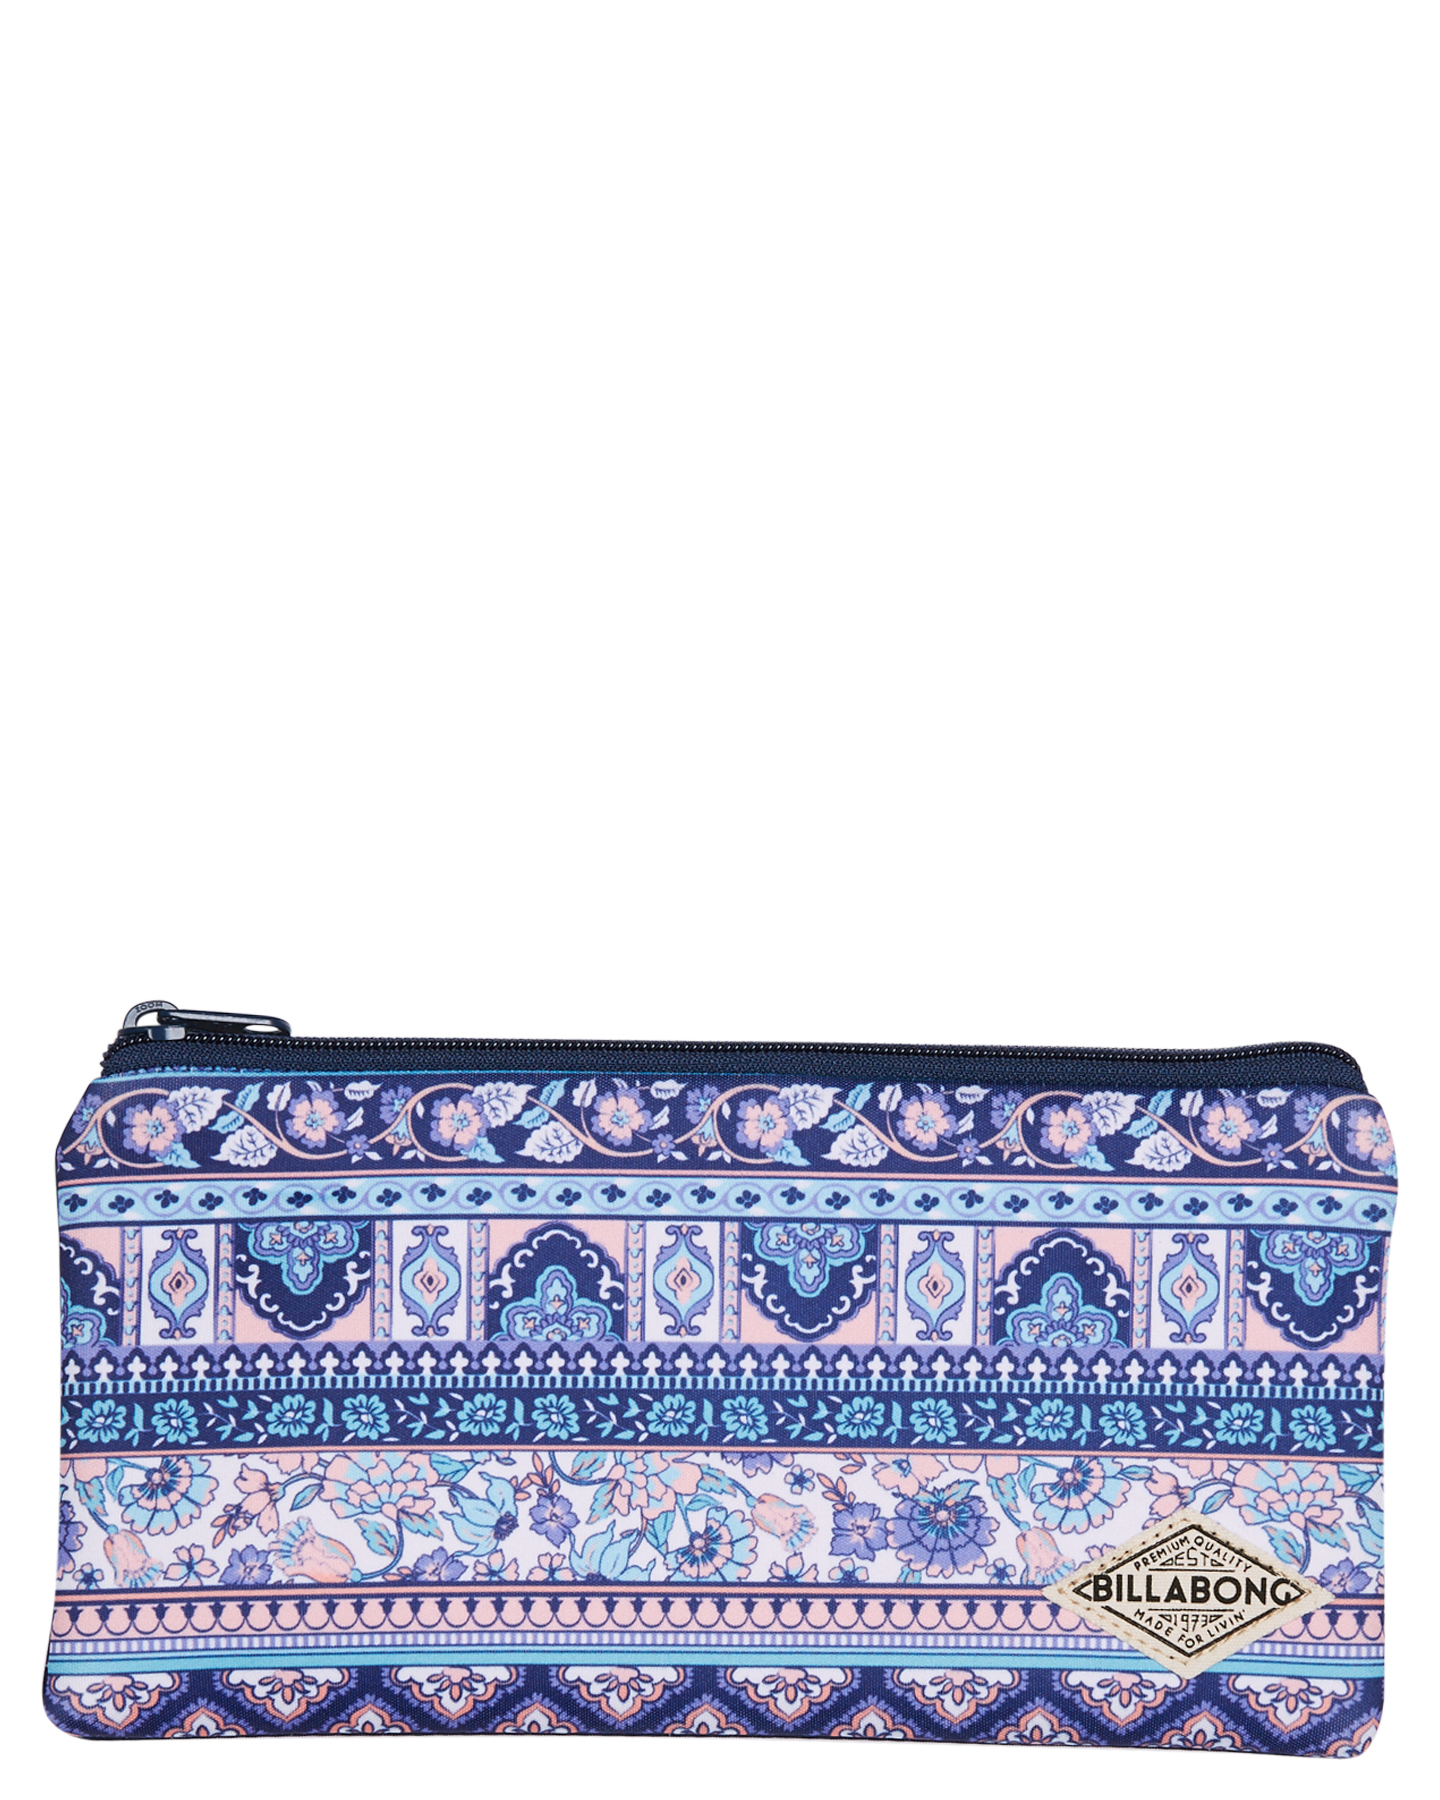 Billabong Gypsy Tribe Pencil Case - Mosaic Blue | SurfStitch